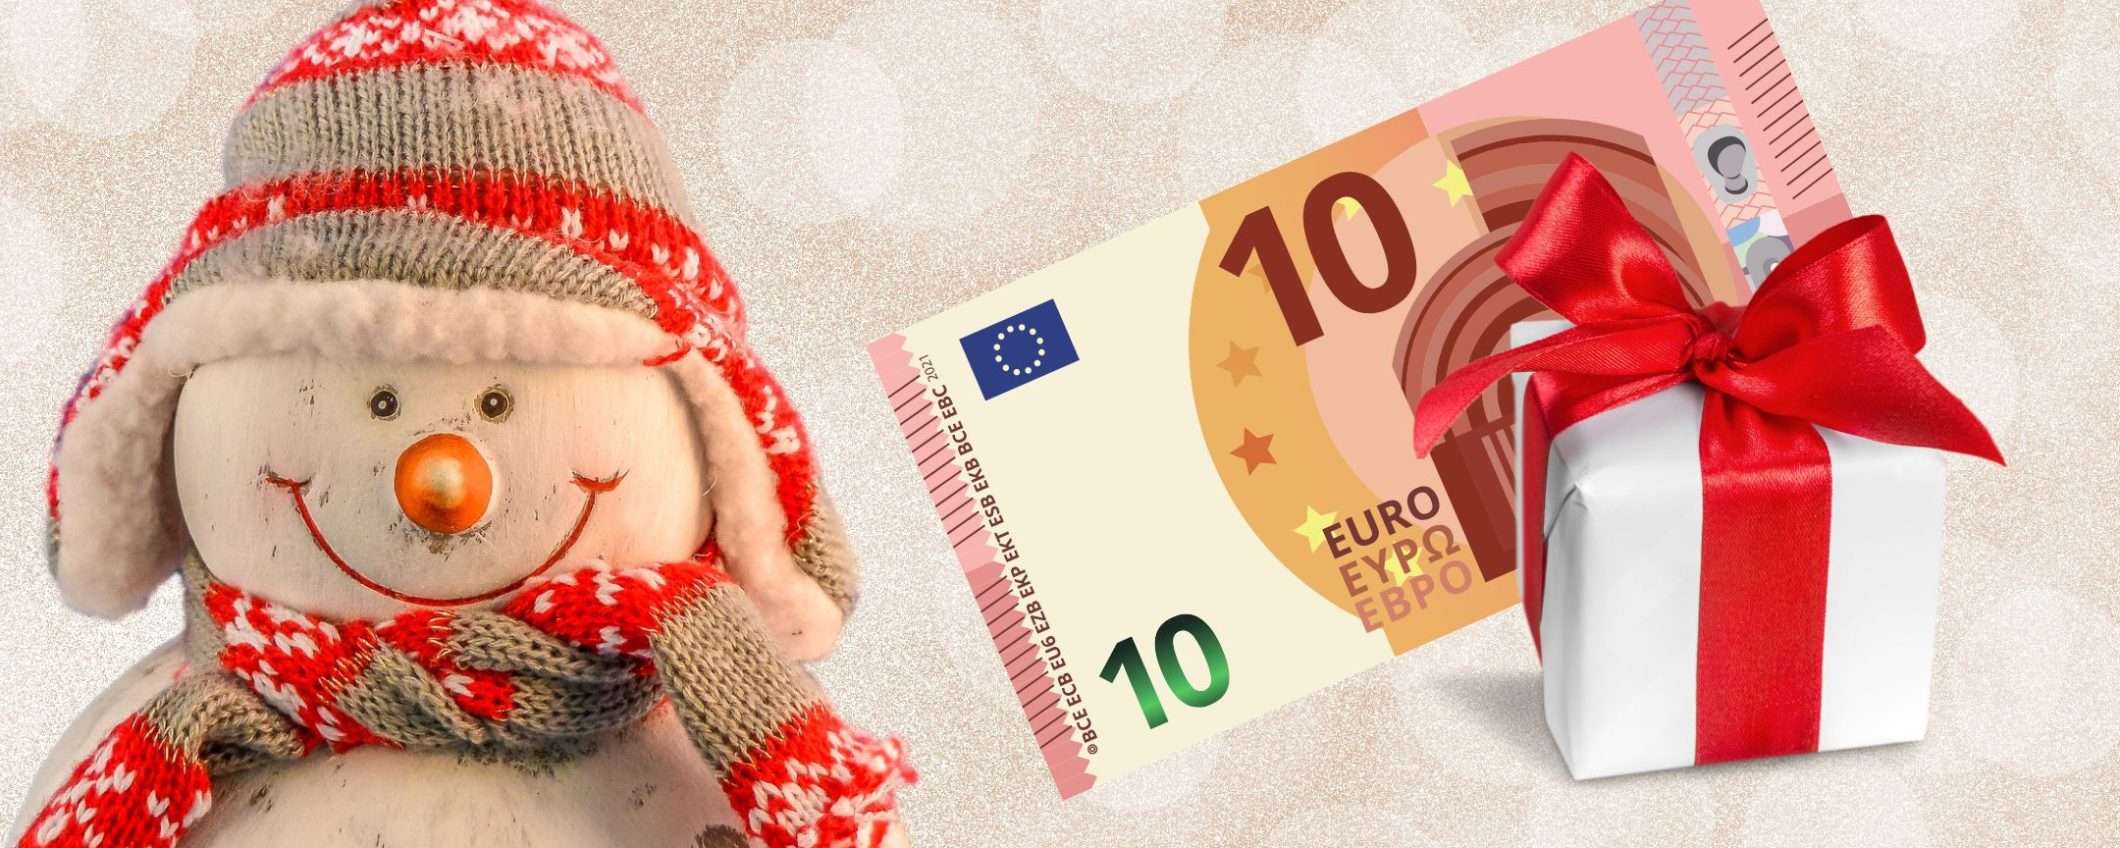 Regali di Natale economici: 5 gadget UTILI e geniali a meno di 10€